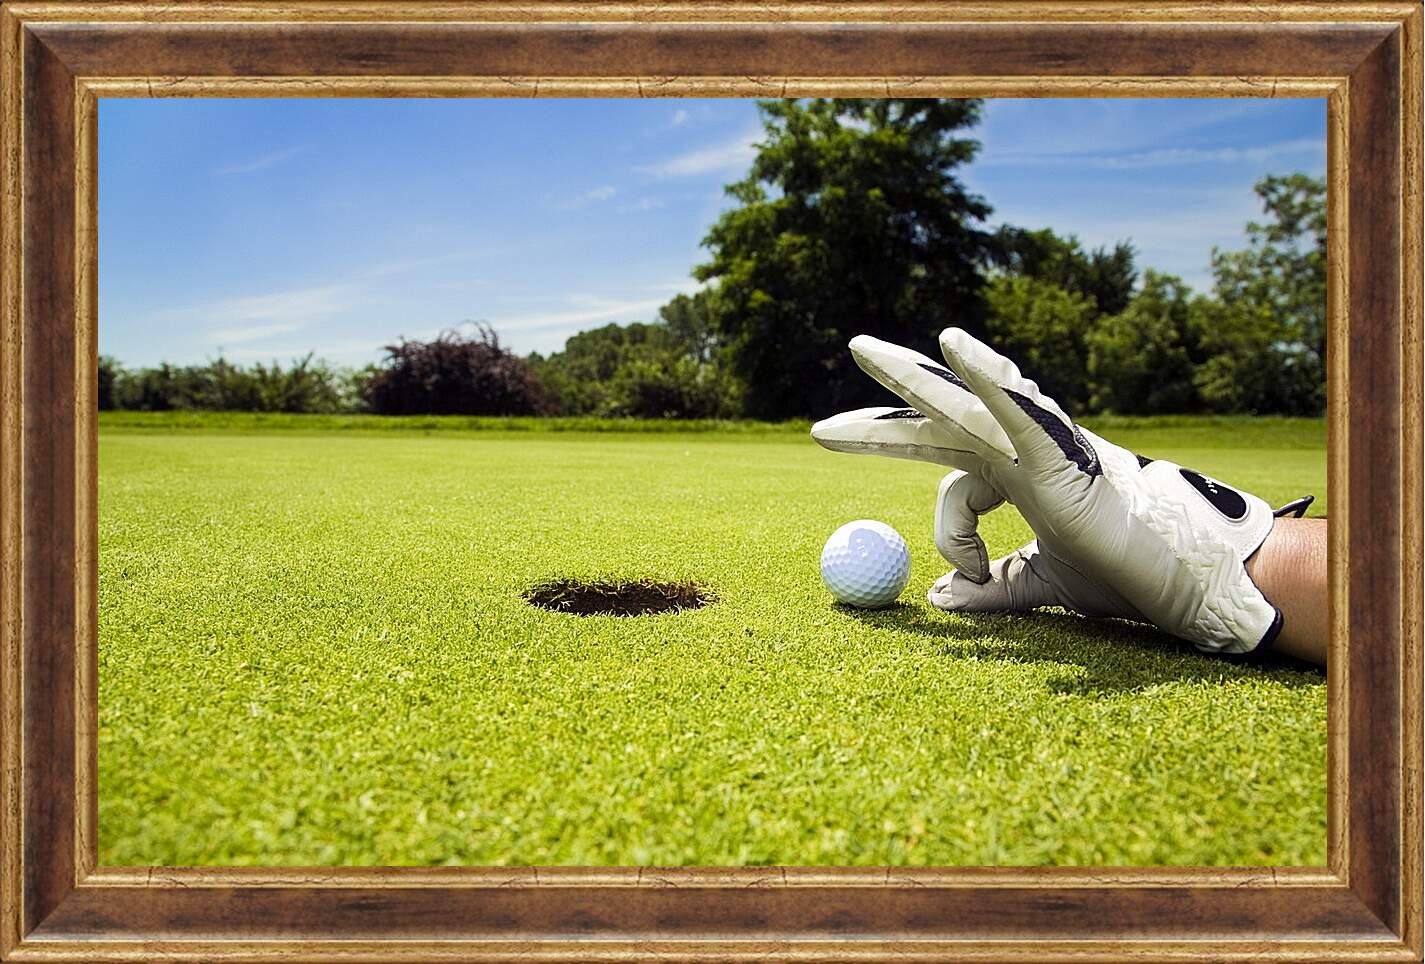 Картина в раме - Лунка для гольфа